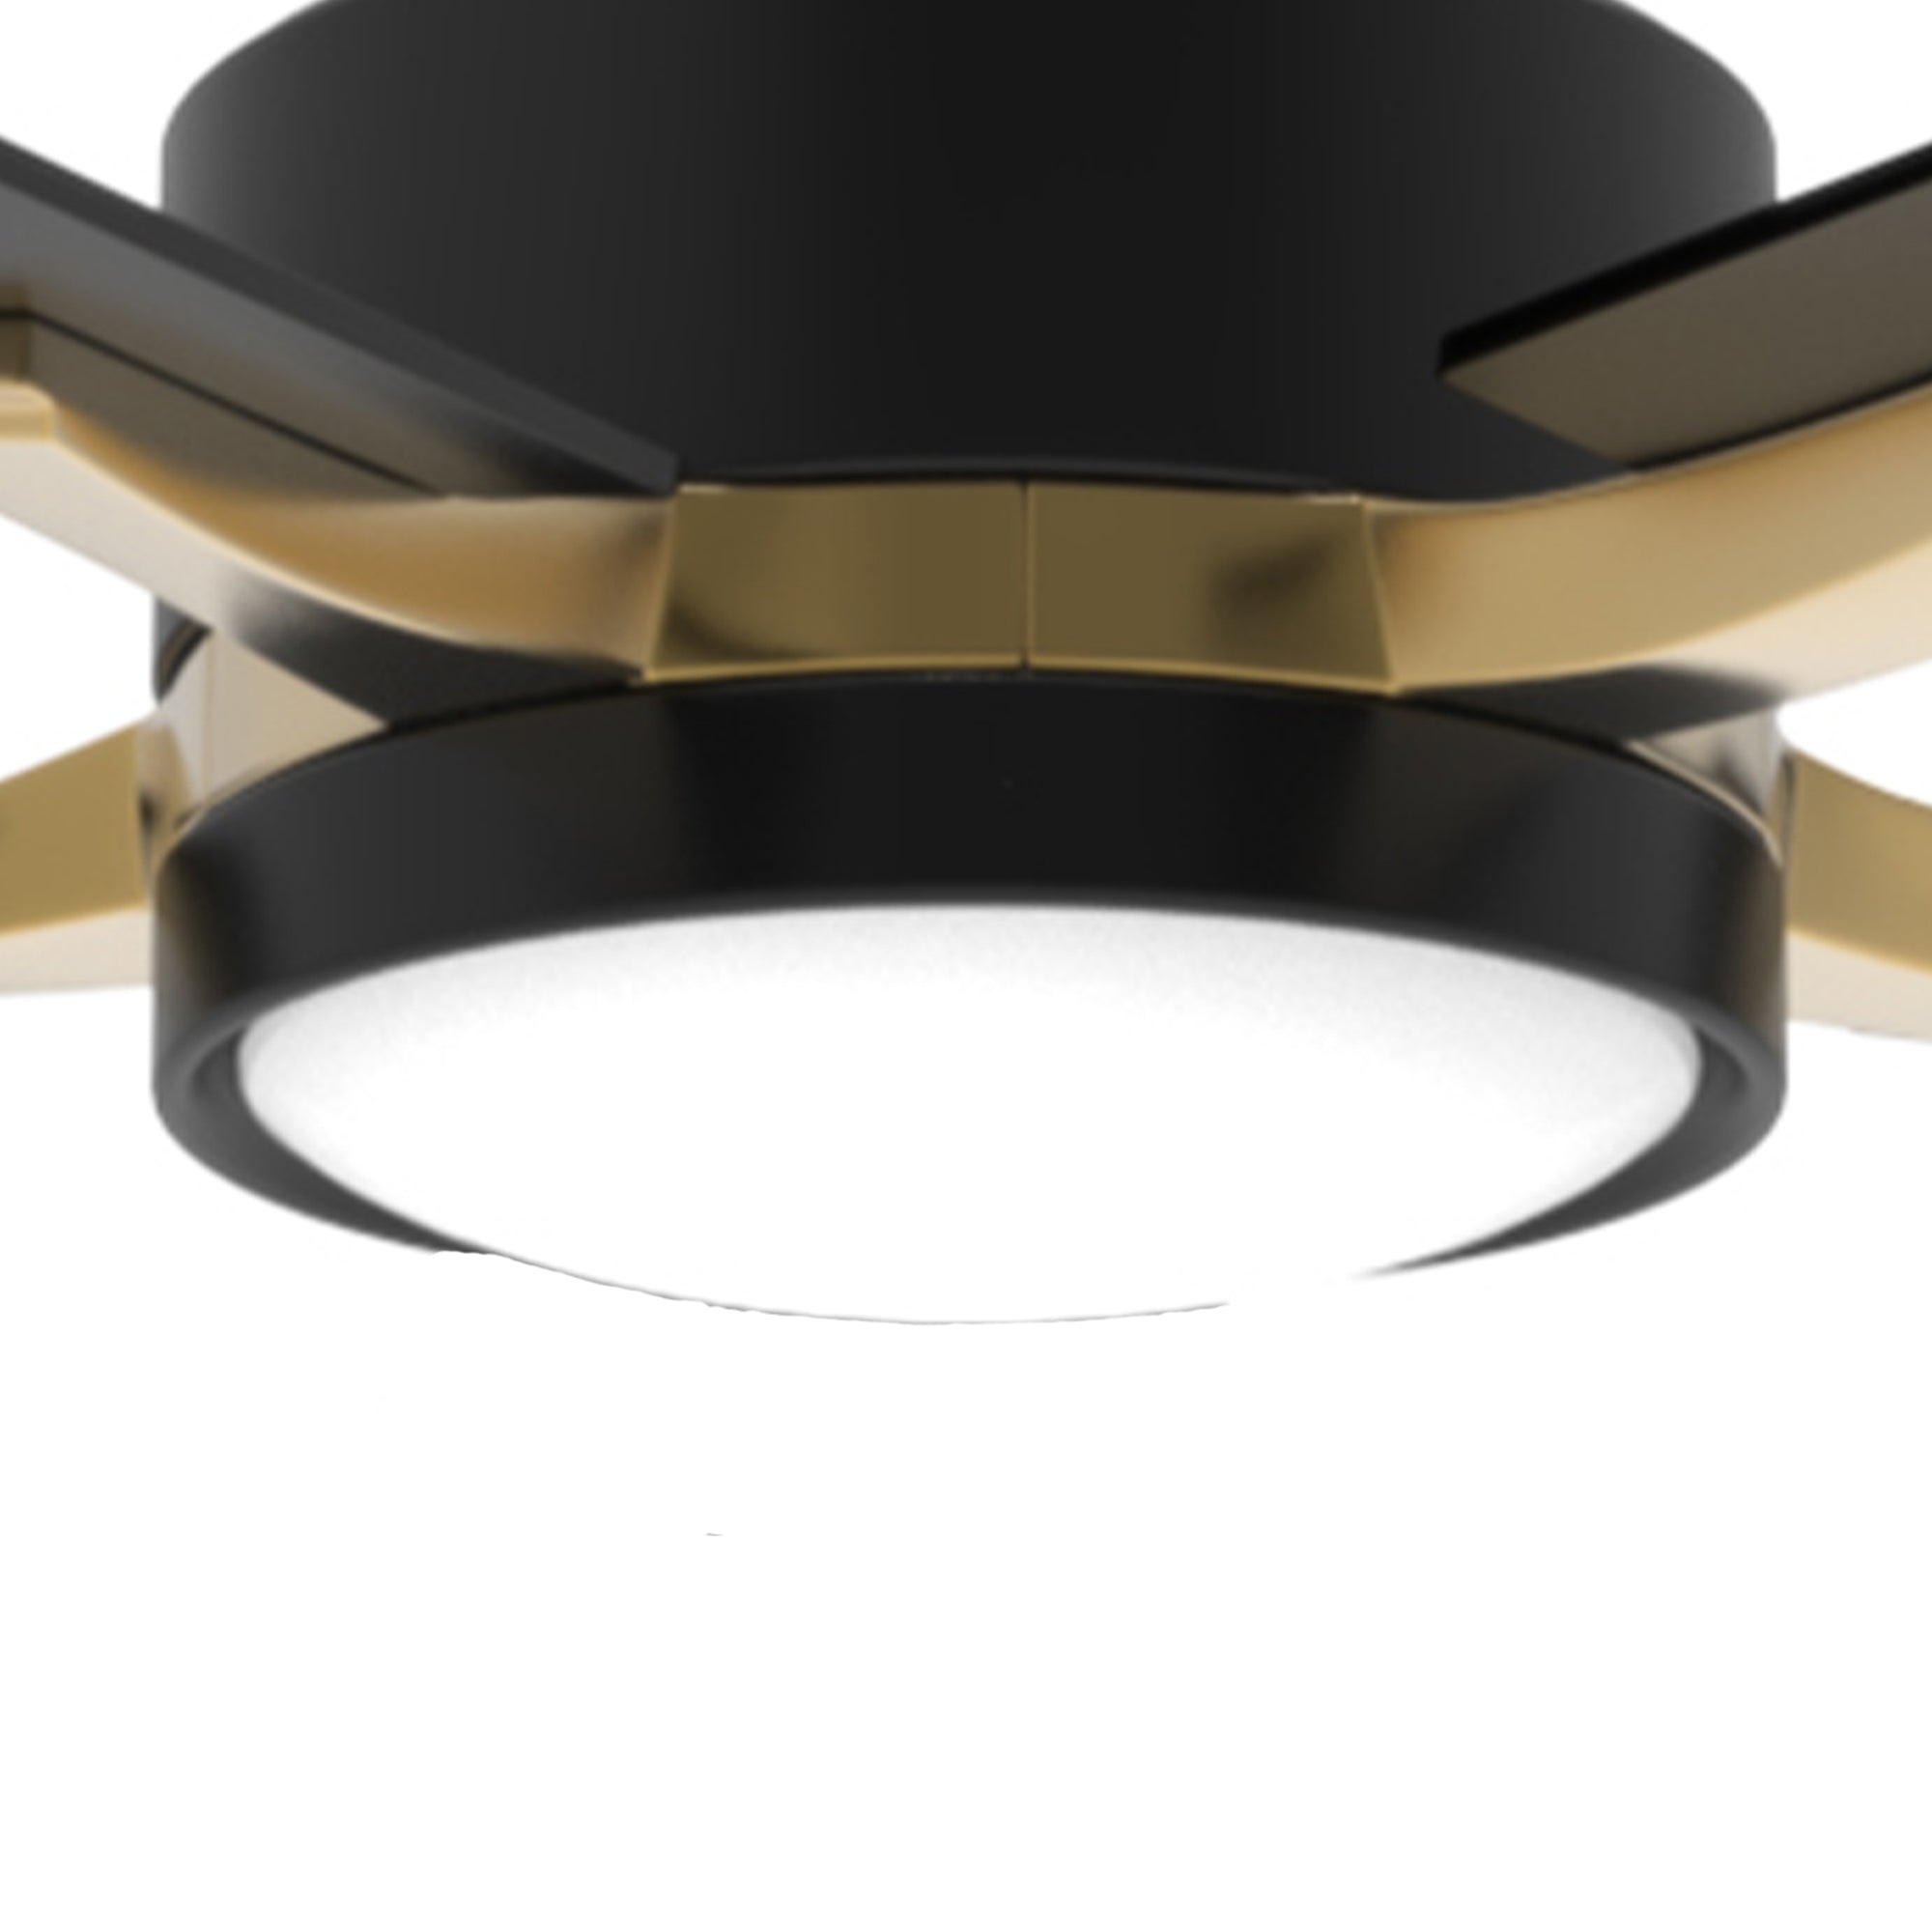 Carro Ceiling Fan Light Cover for Apex / Viter Smart Fans